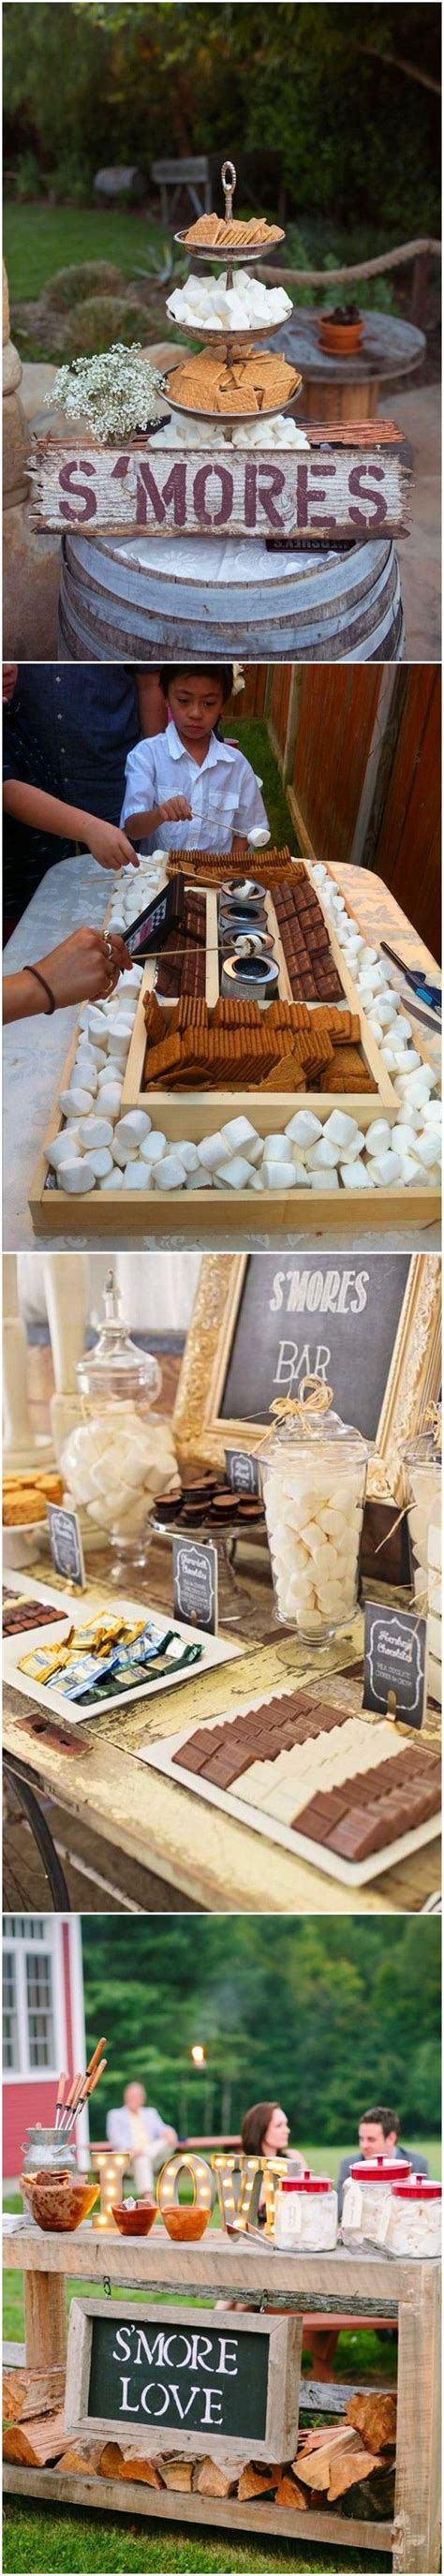 wedding ideas wedding s more bar ideas — water mouthing dessert bar inspiration bar